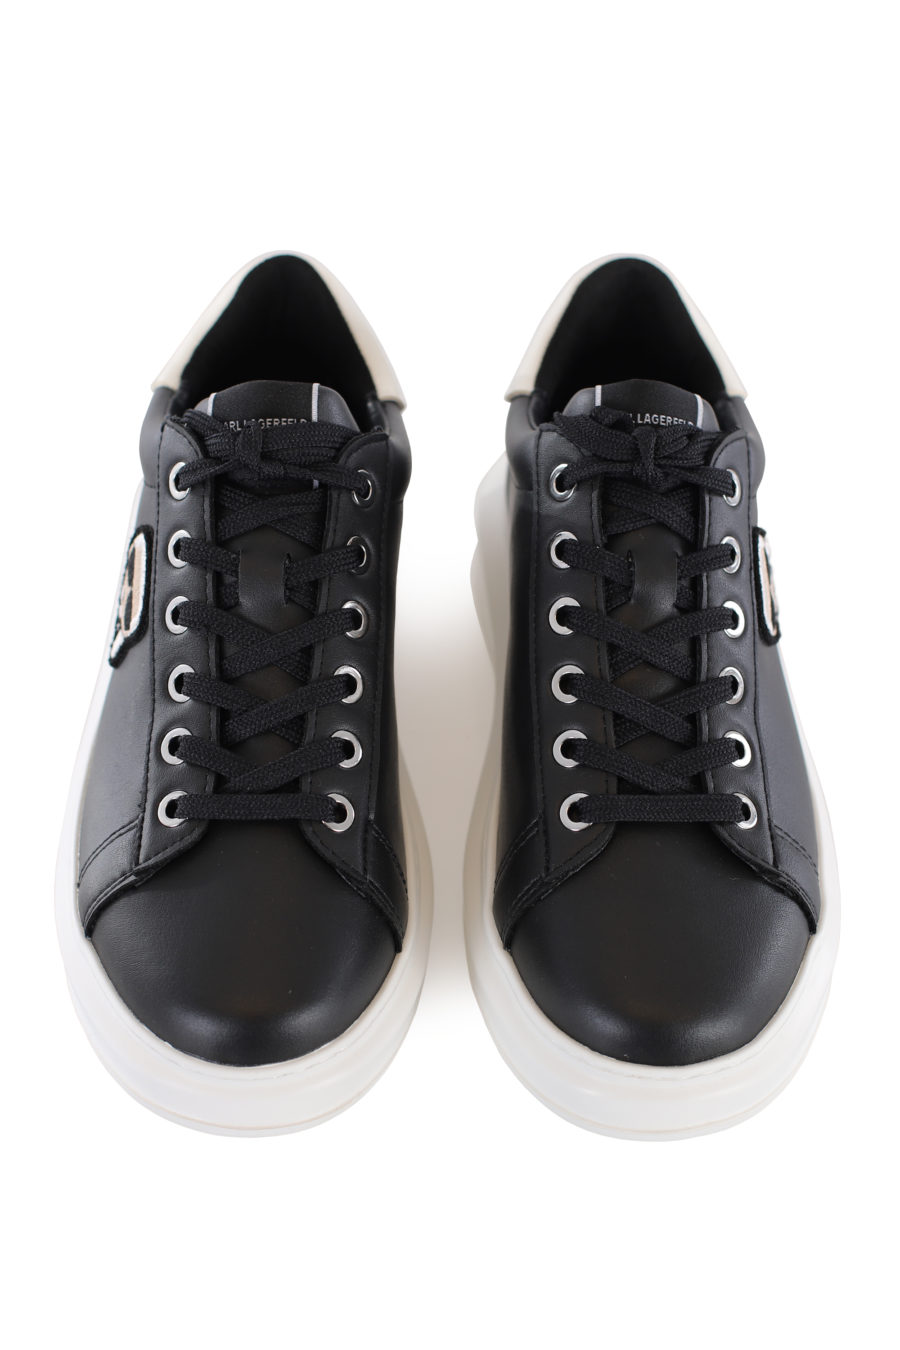 Zapatillas negras altas con parche - IMG 1659